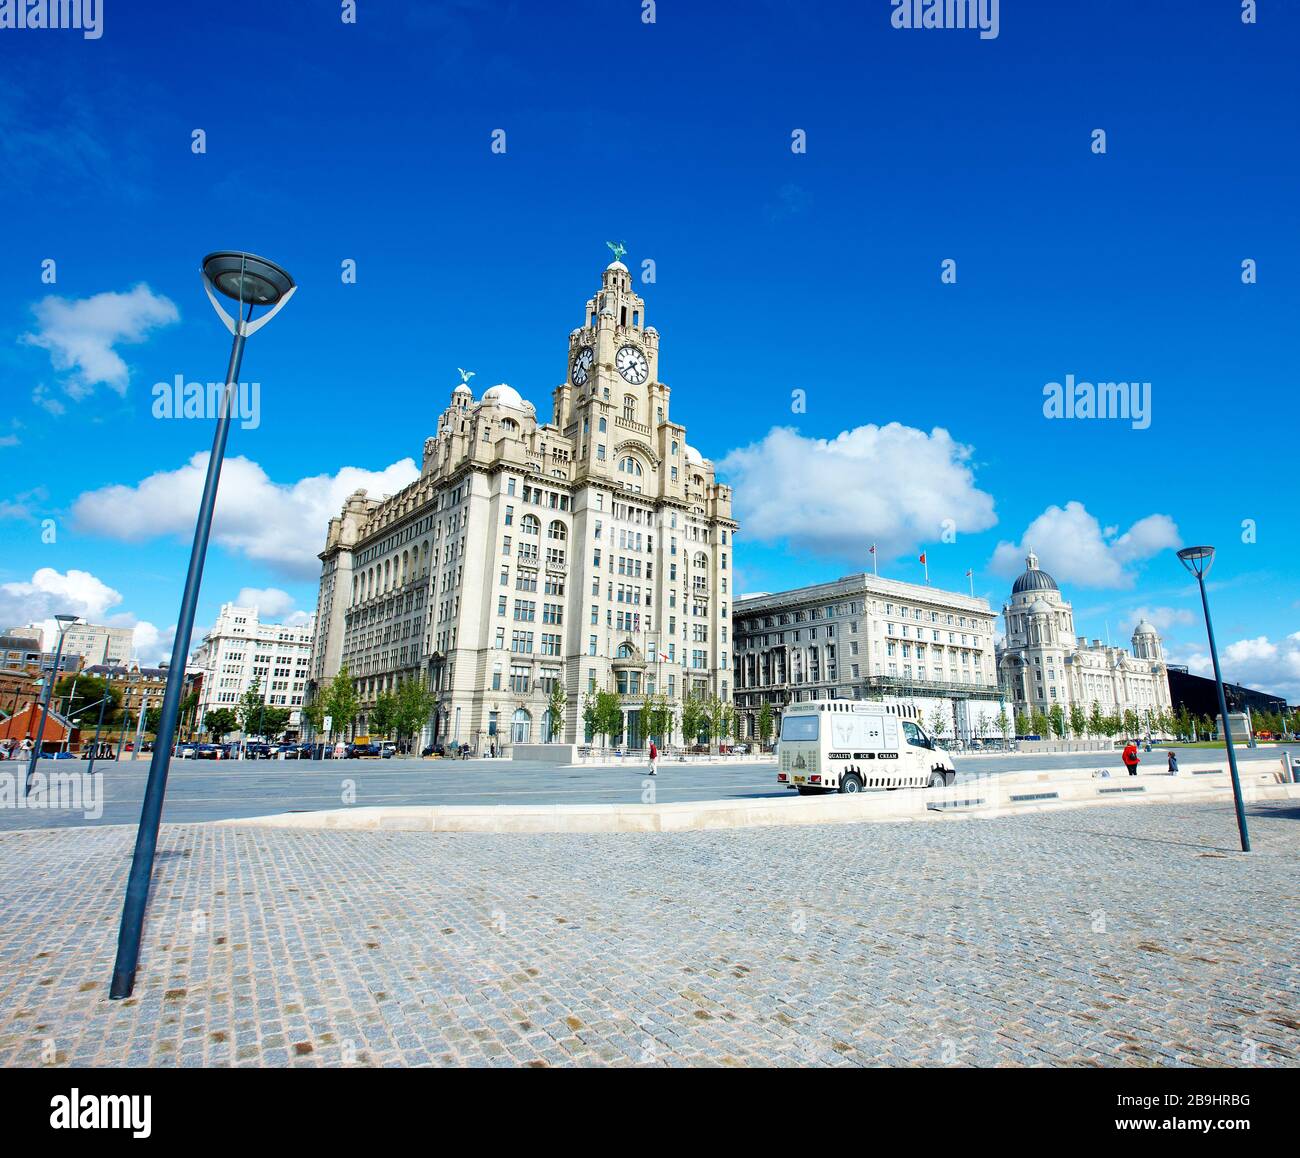 Il famoso e storico Royal Liver Building a Pier Head sul lungomare di Liverpool, Inghilterra, Regno Unito Foto Stock